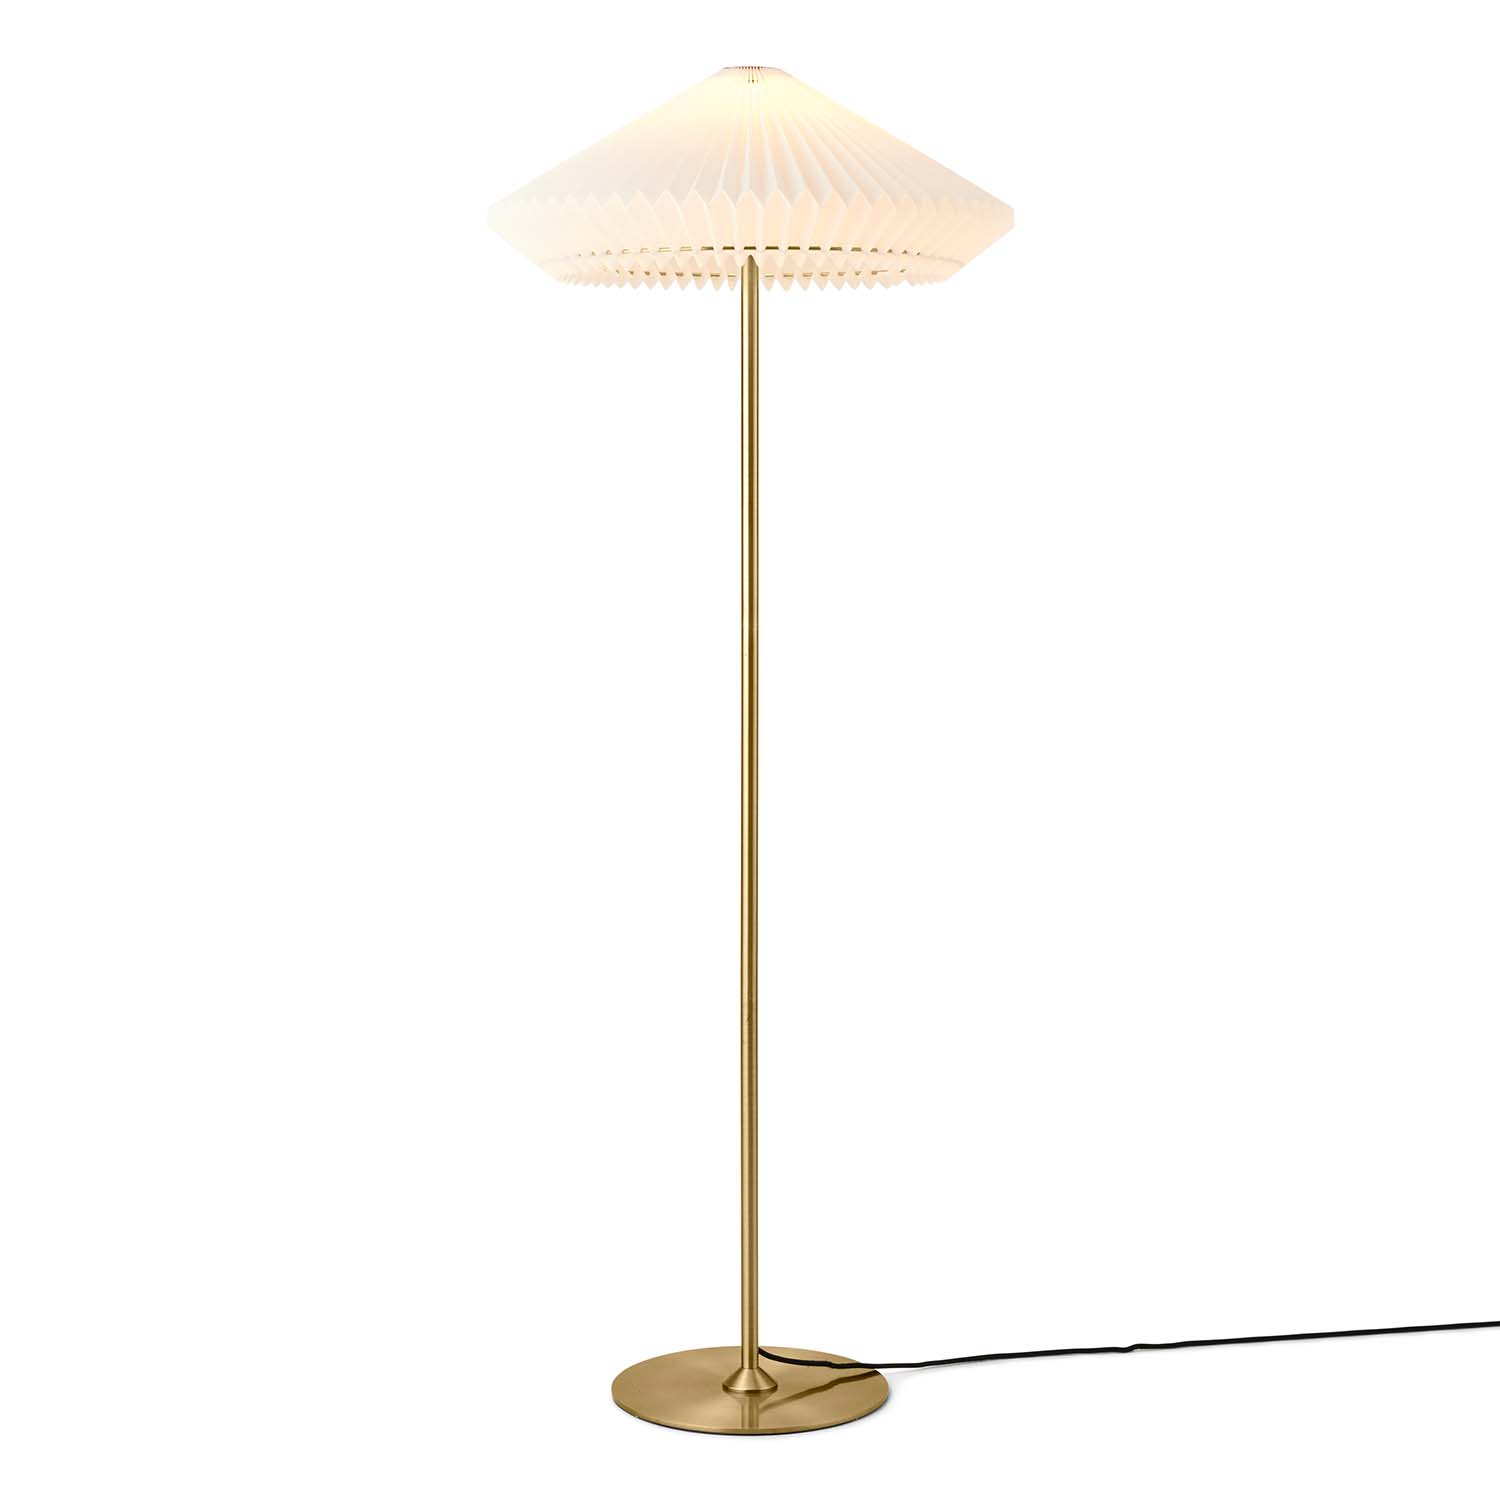 PARIS – Vintage-Plissee-Stehlampe mit konischem Design